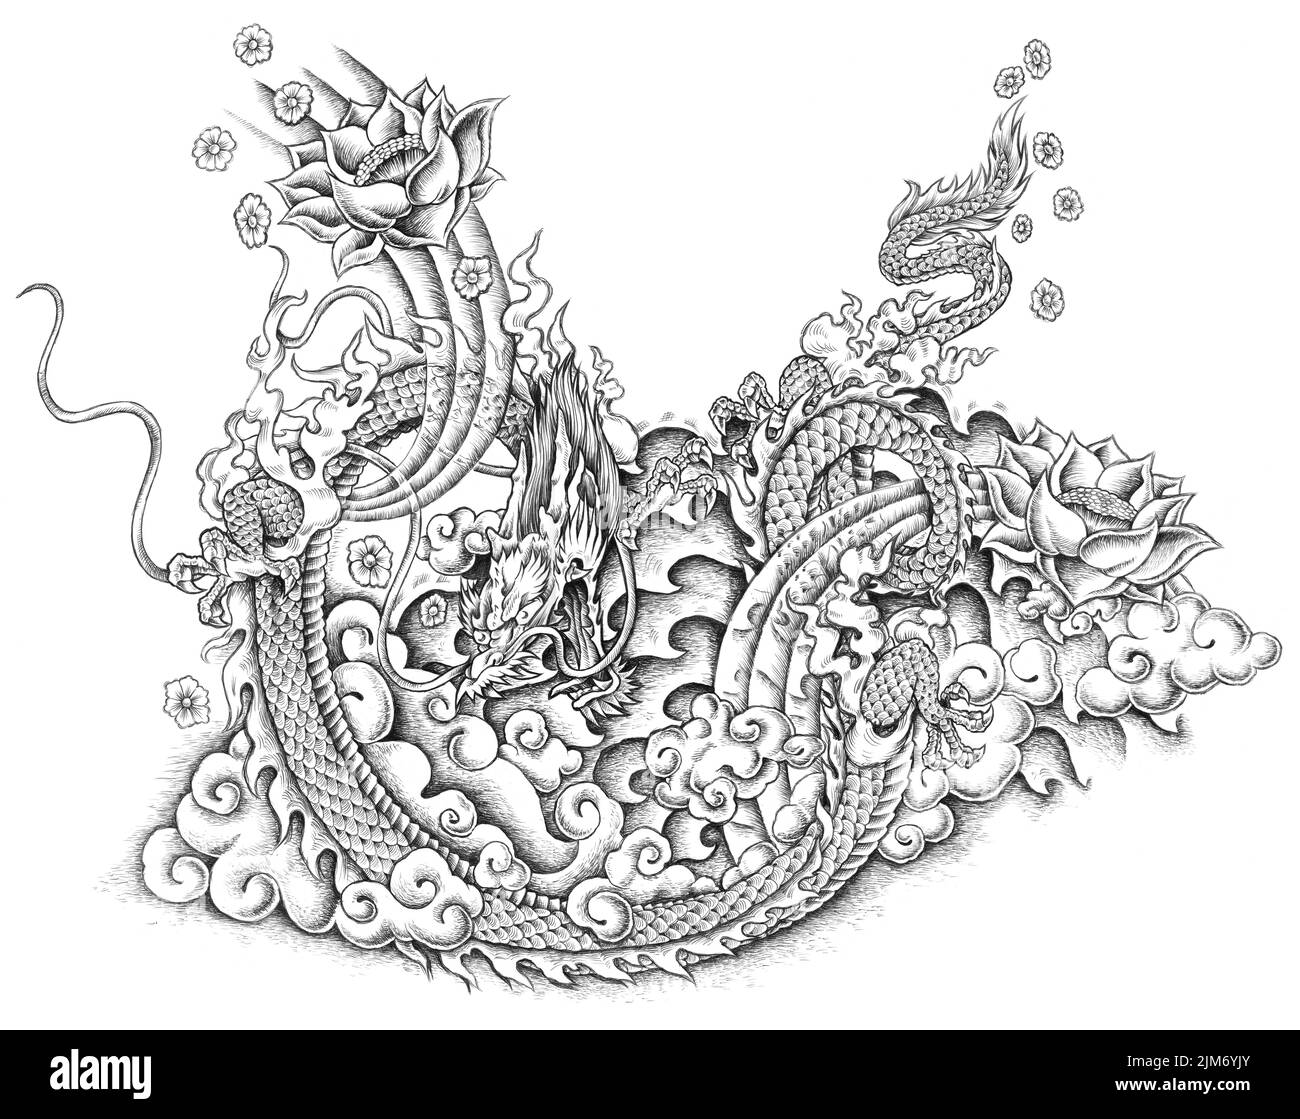 Eine digitale schwarz-weiße Tattoo-Illustration eines Drachen mit Details Stockfoto